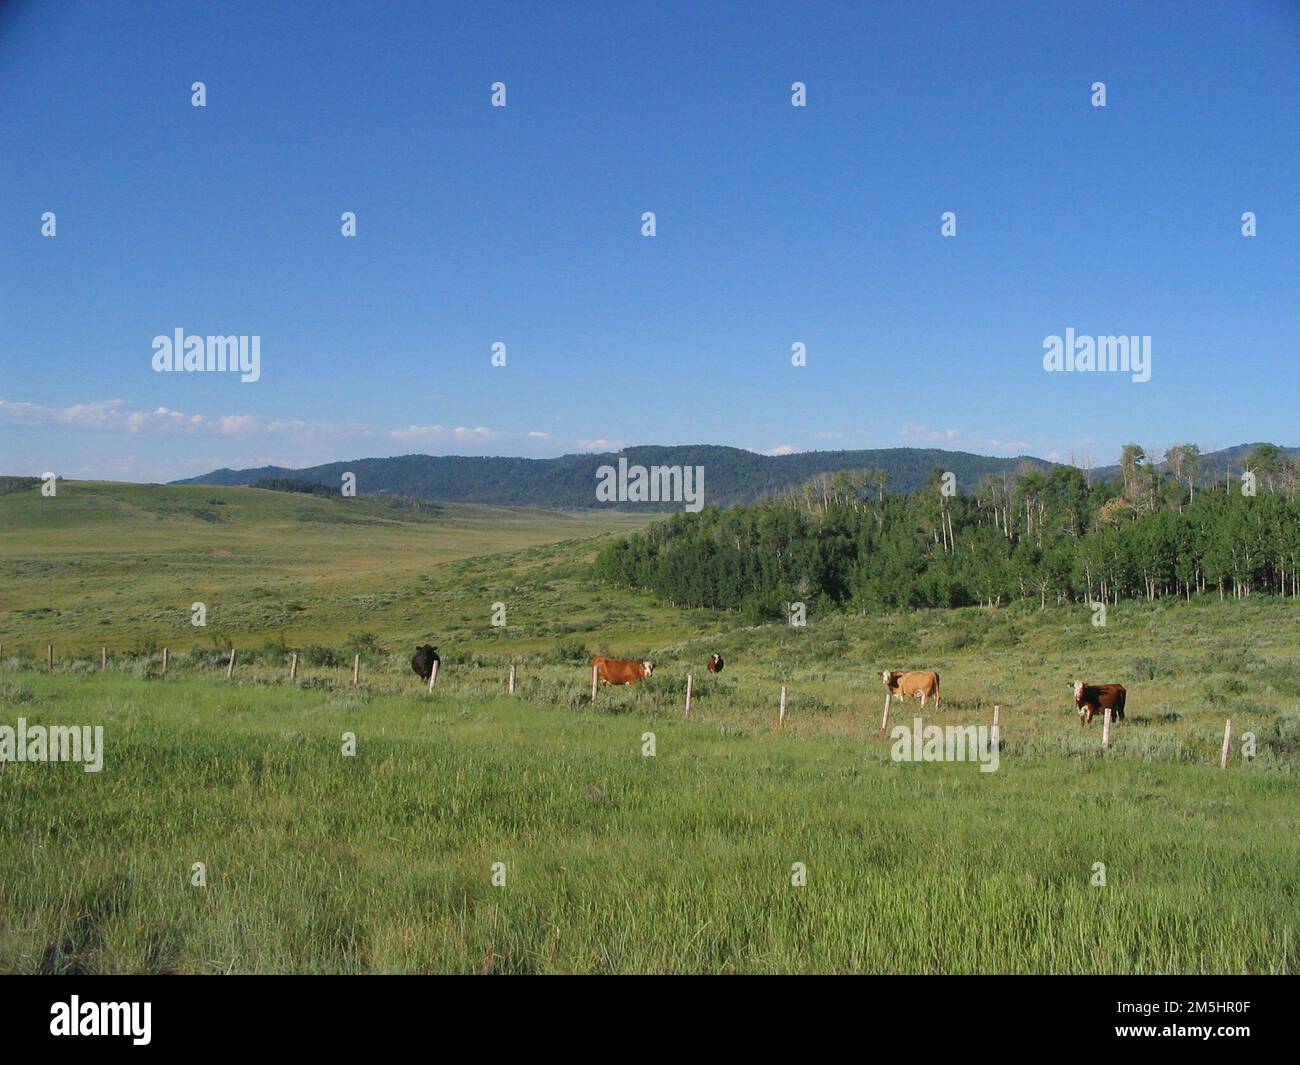 Pioneer Historic Byway - pâturages de montagne. Les arbres s'étendant des montagnes font une belle maison temporaire pour les vaches qui pâturage dans les champs. Lieu : entre China Hat formation et Freedom, Idaho (42,996° N 111,051° O) Banque D'Images